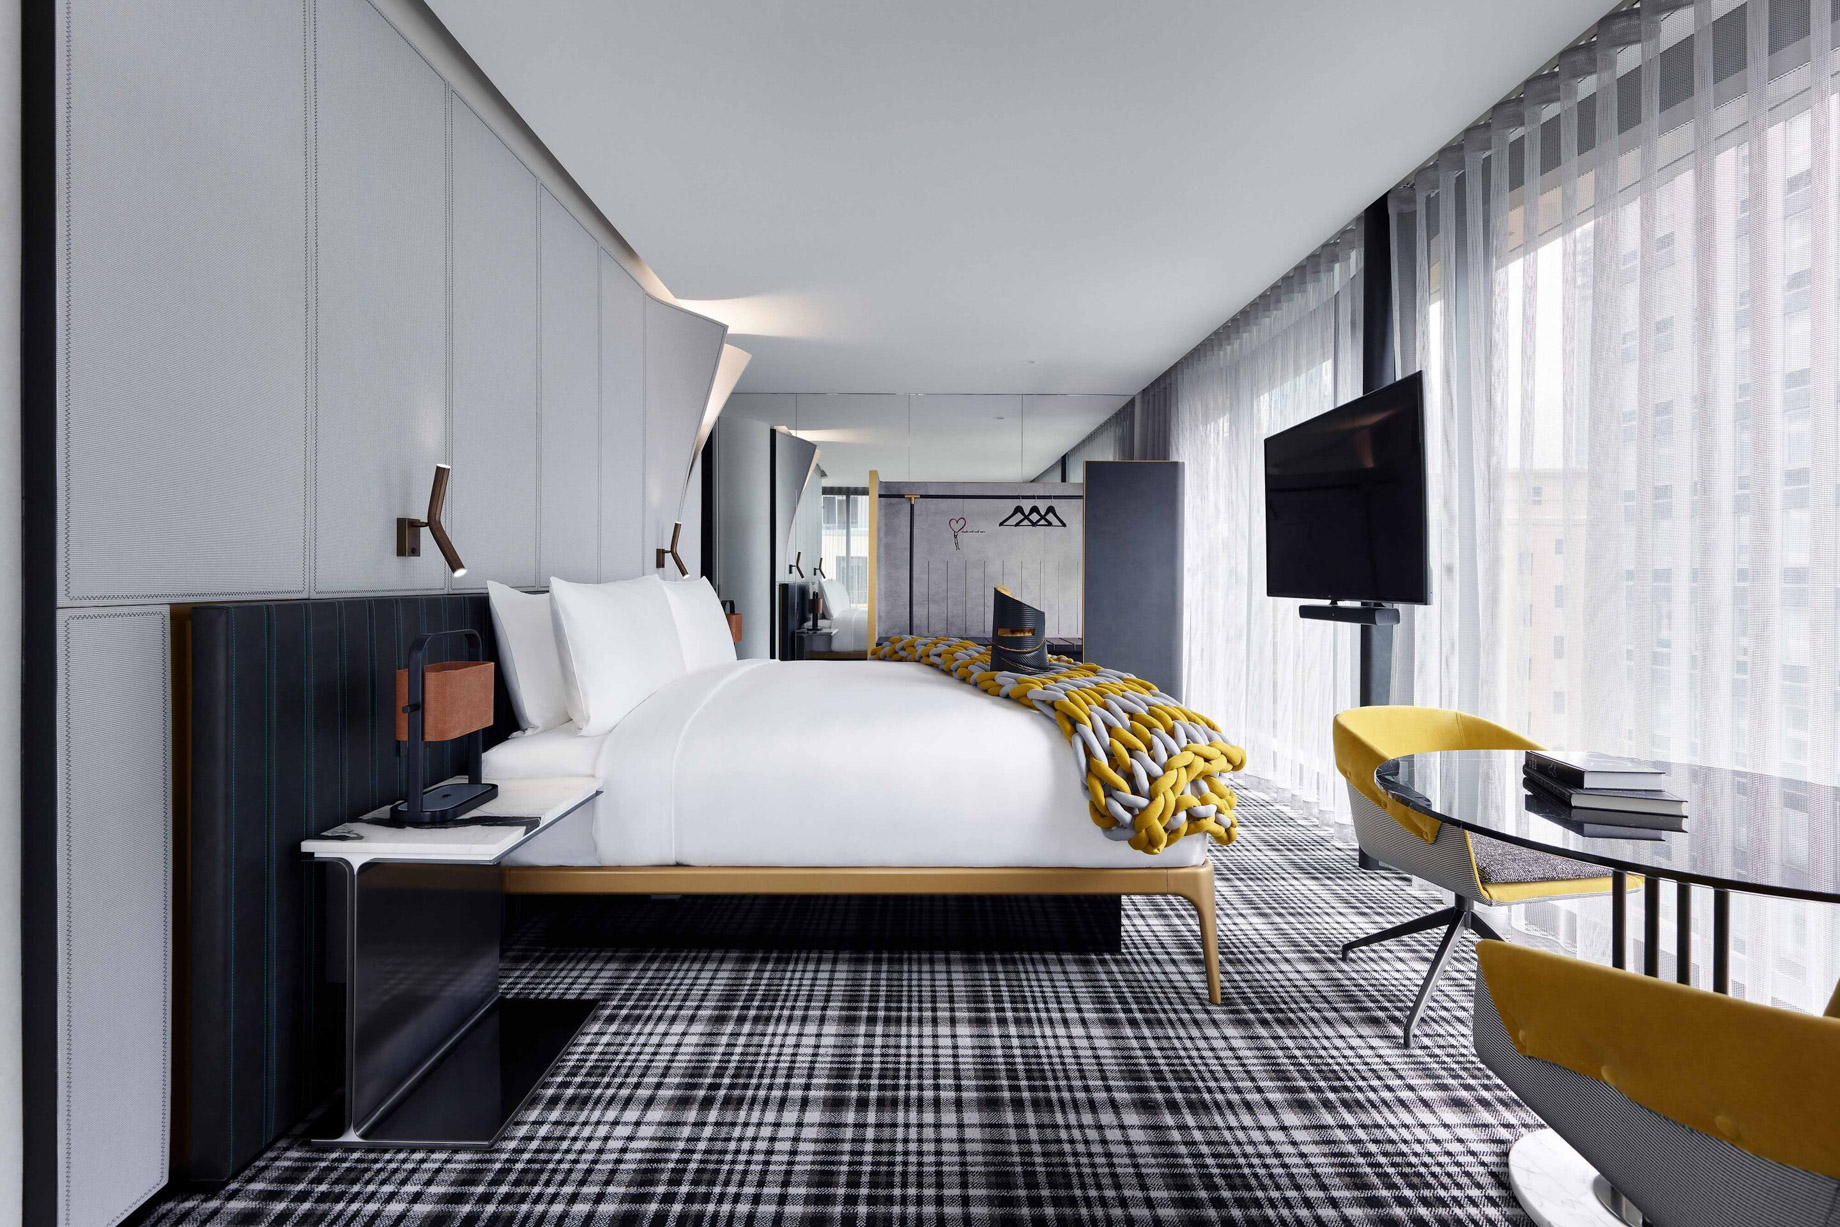 W Melbourne Hotel – Melbourne, Australia – Marvellous Suite Bed